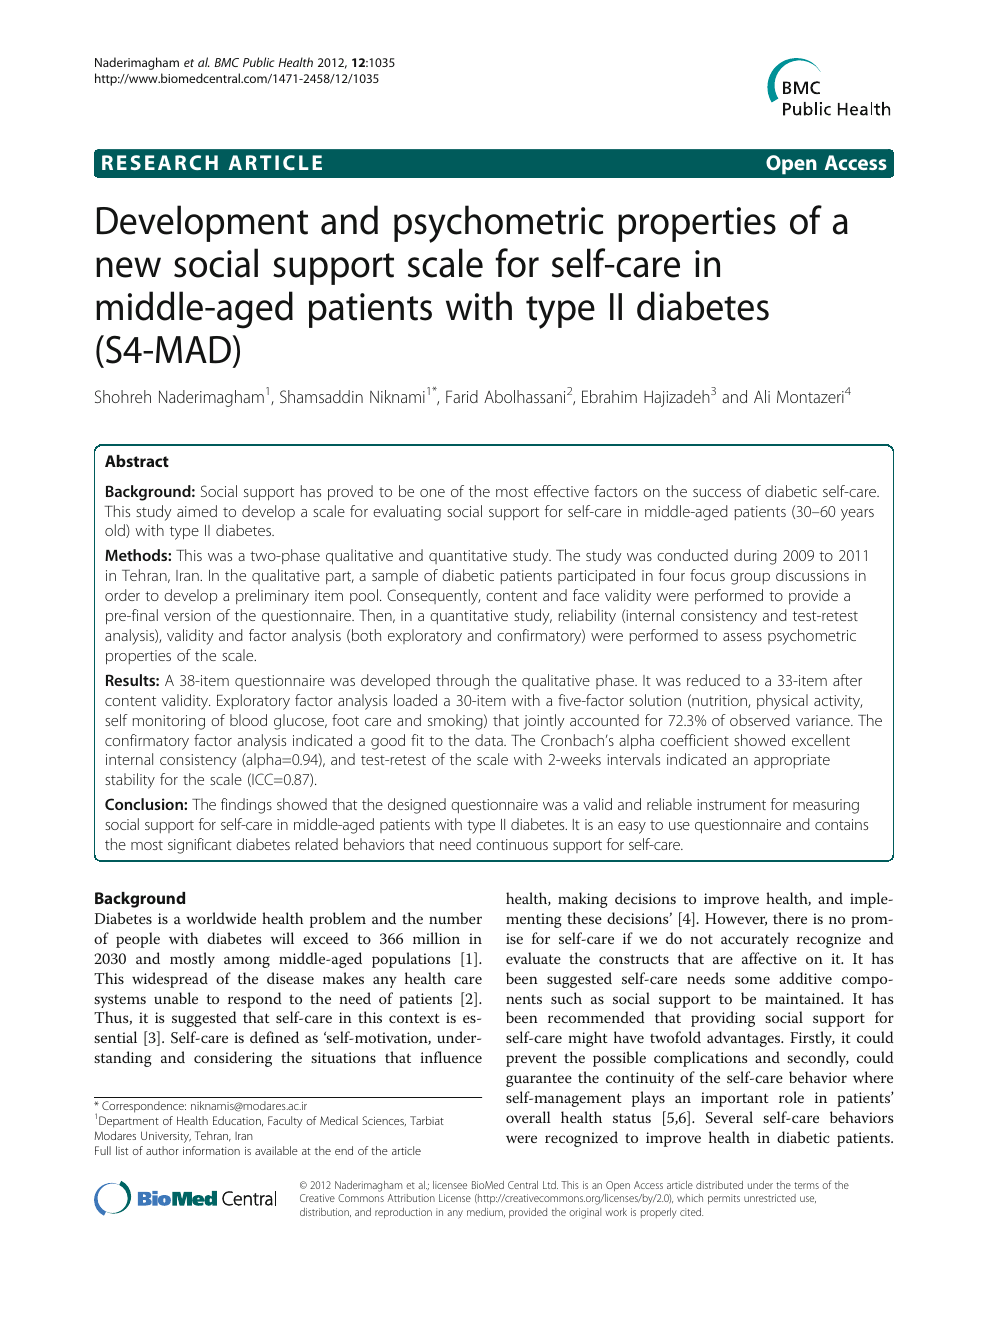 diabetes care profile (dcp)